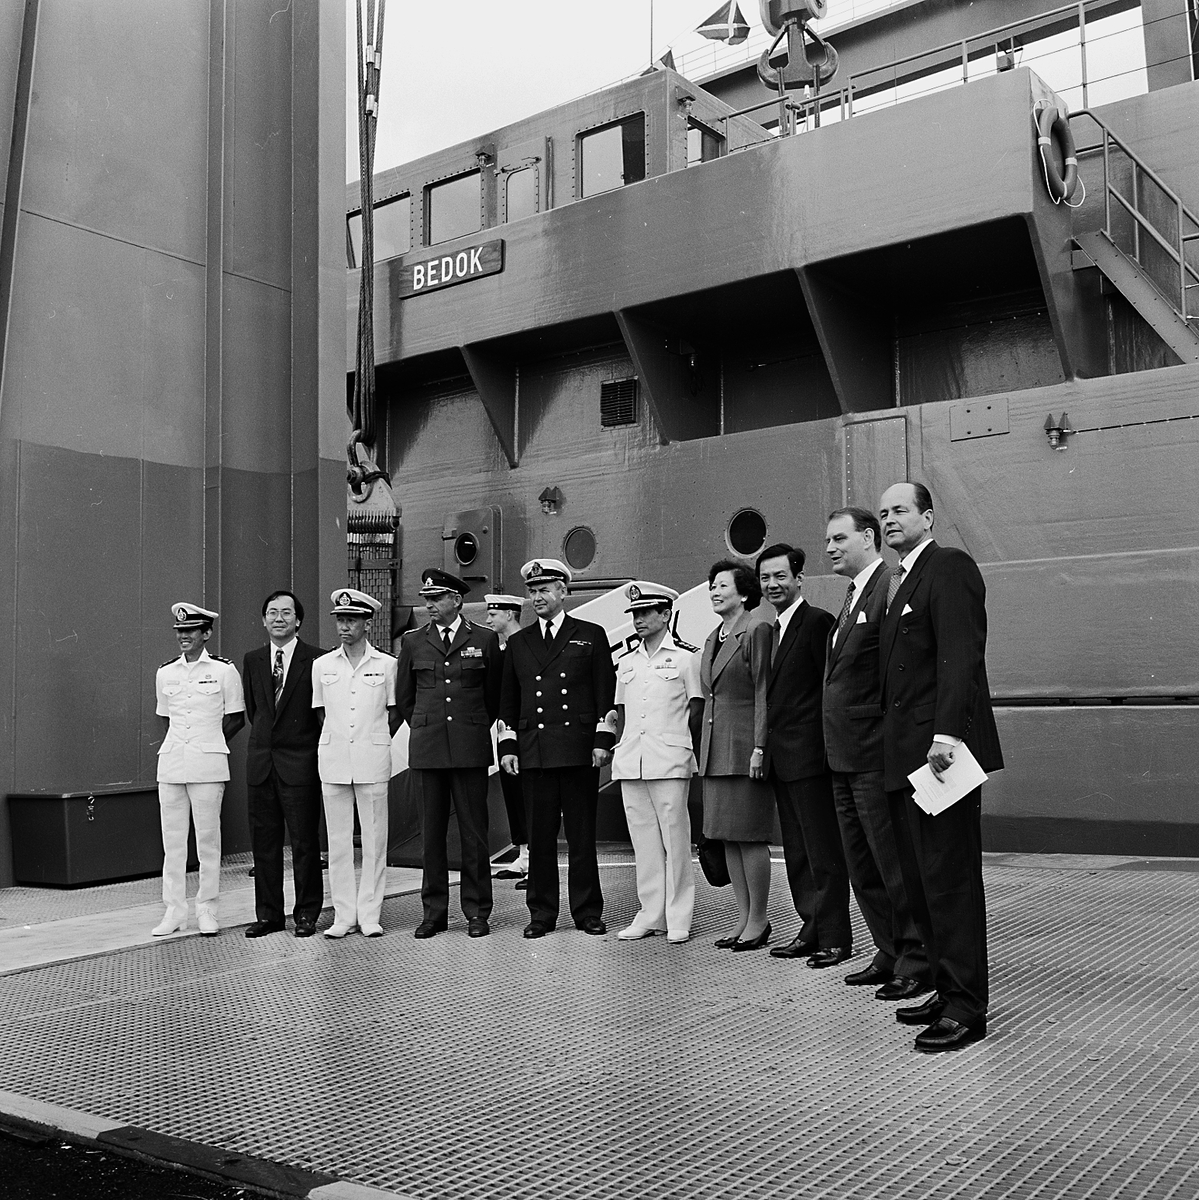 Varvet runt- en bildutställning
Minröjningsfartyget Bedok för The Republic of Singapore Navy skall namngivas 1993. Hedersgästerna är samlade. Längst till höger varvsdirektören Hans Hedman.